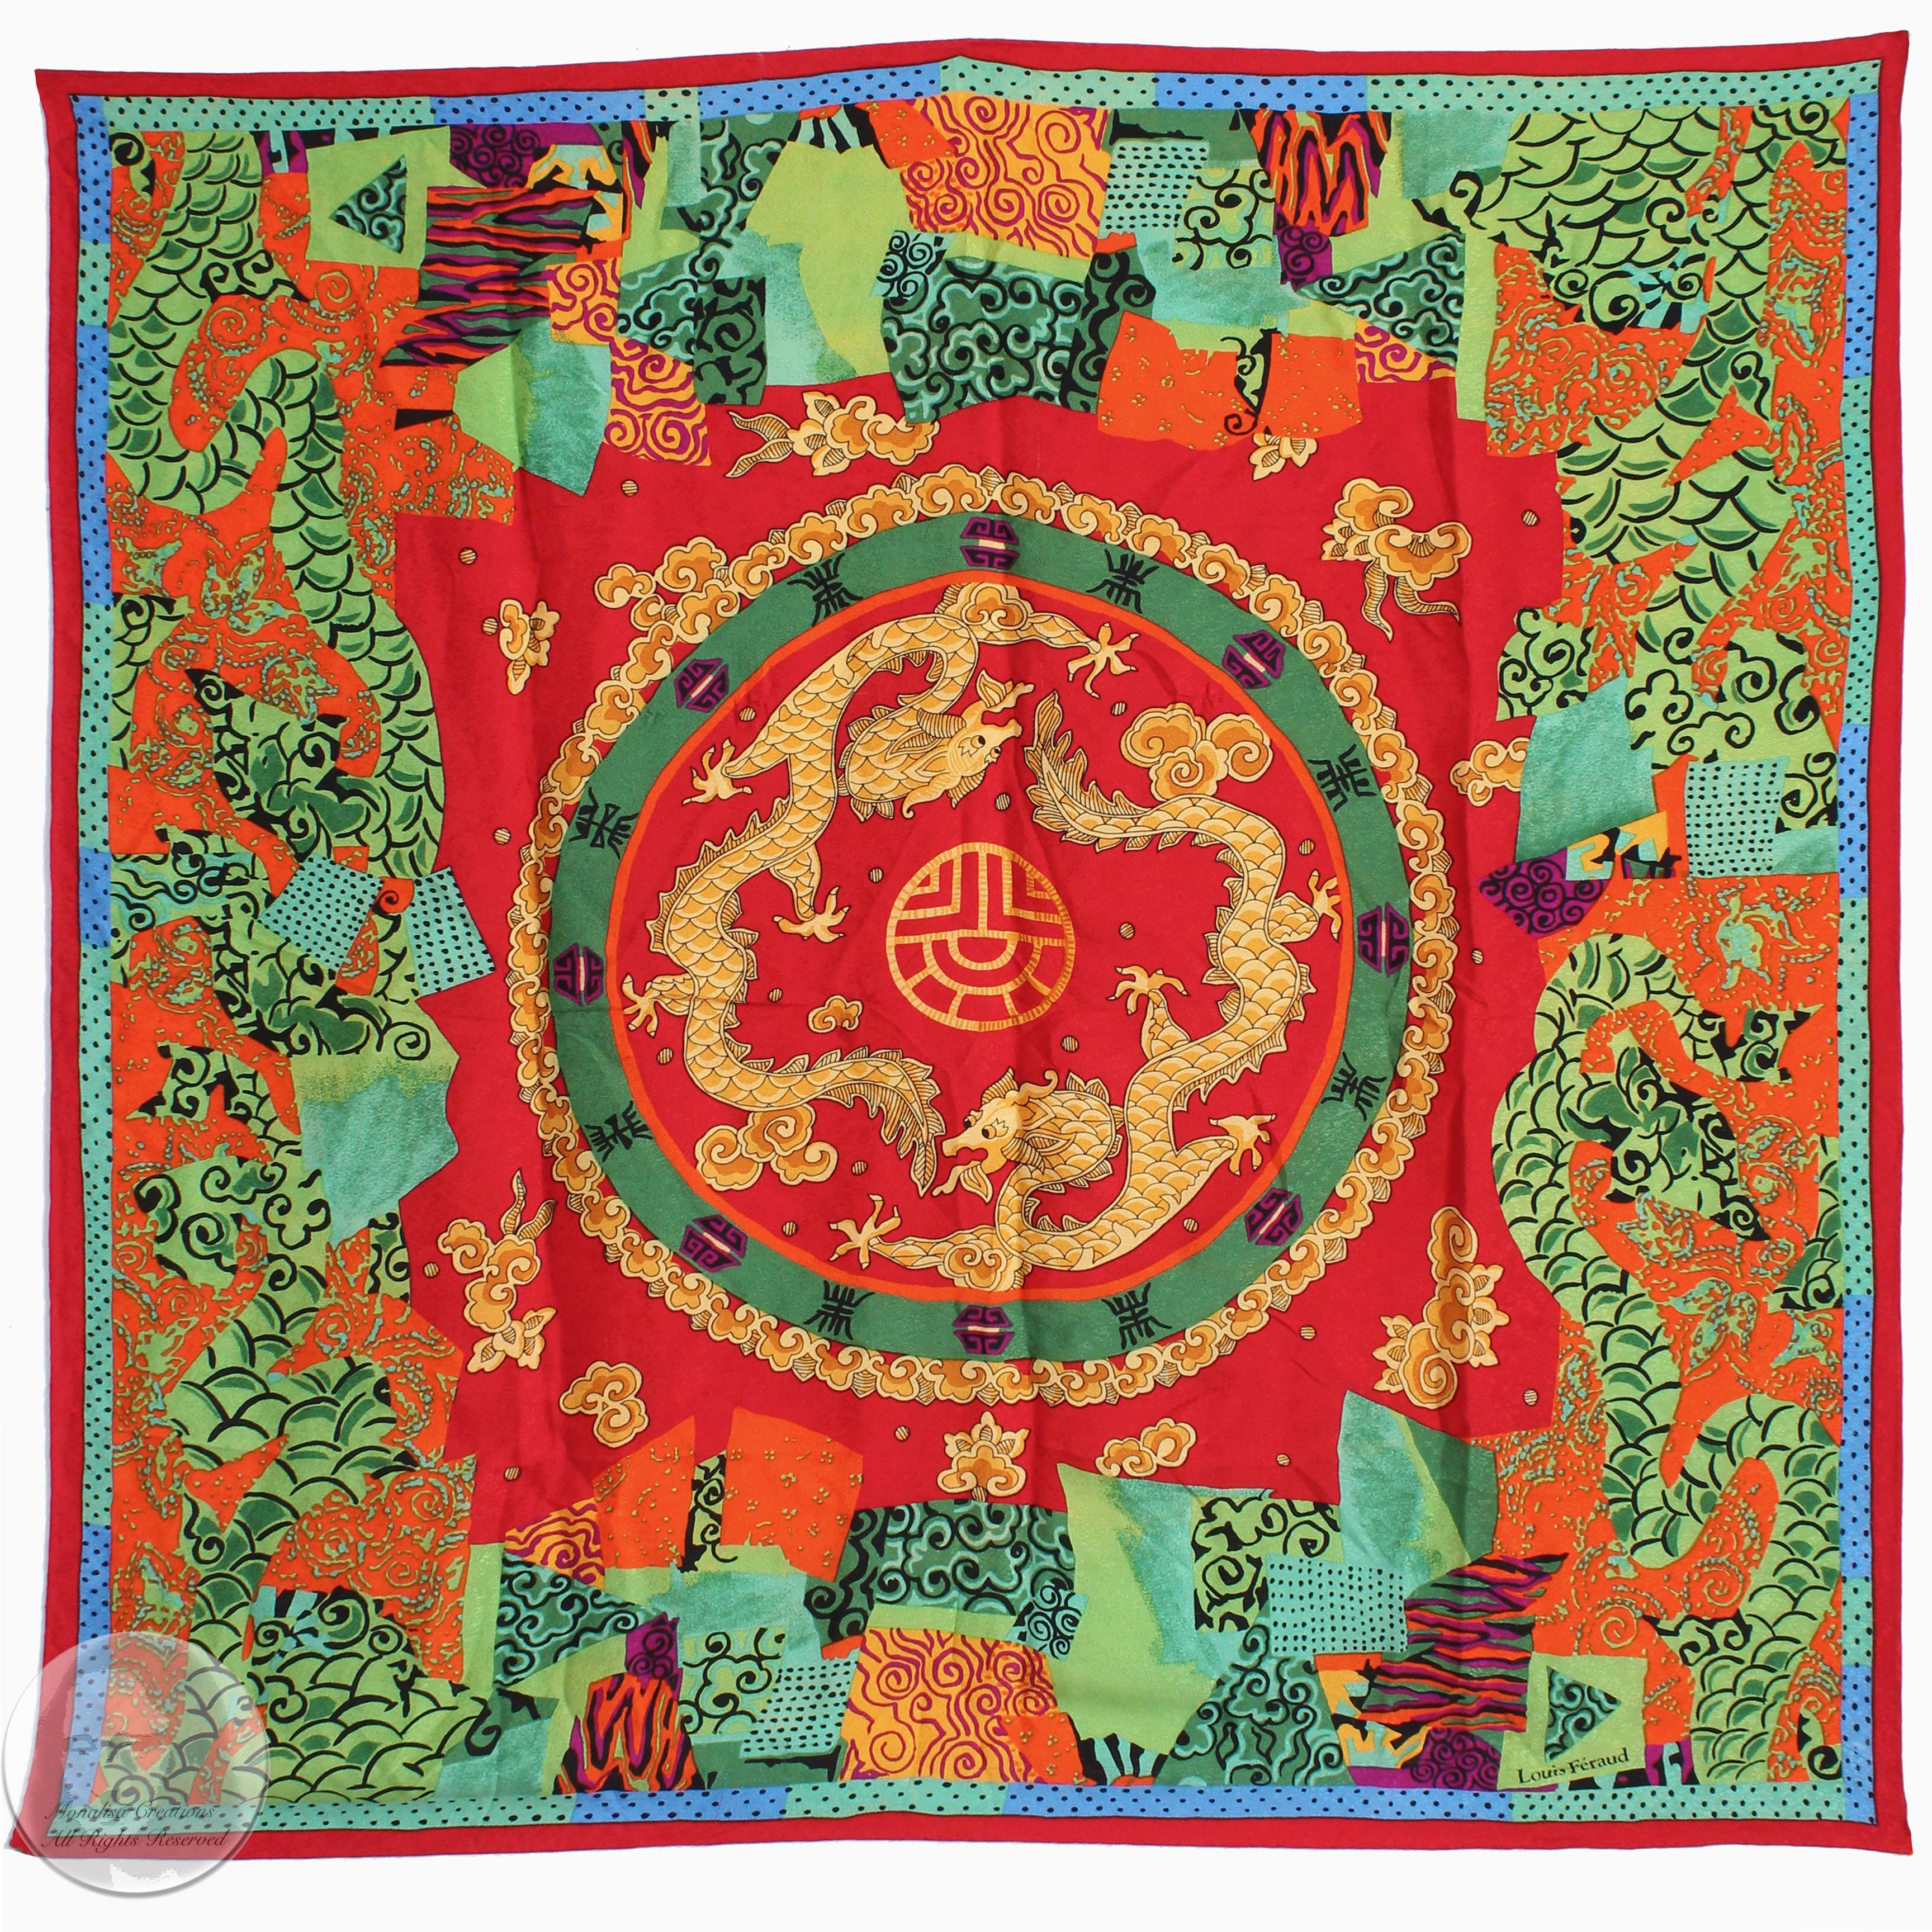 Ce ravissant foulard ou châle en jacquard de soie a �été réalisé par Louis Feraud, vraisemblablement à la fin des années 1980. Réalisée dans une magnifique soie rouge, elle est ornée de dragons dorés dansants et d'autres motifs et symboles